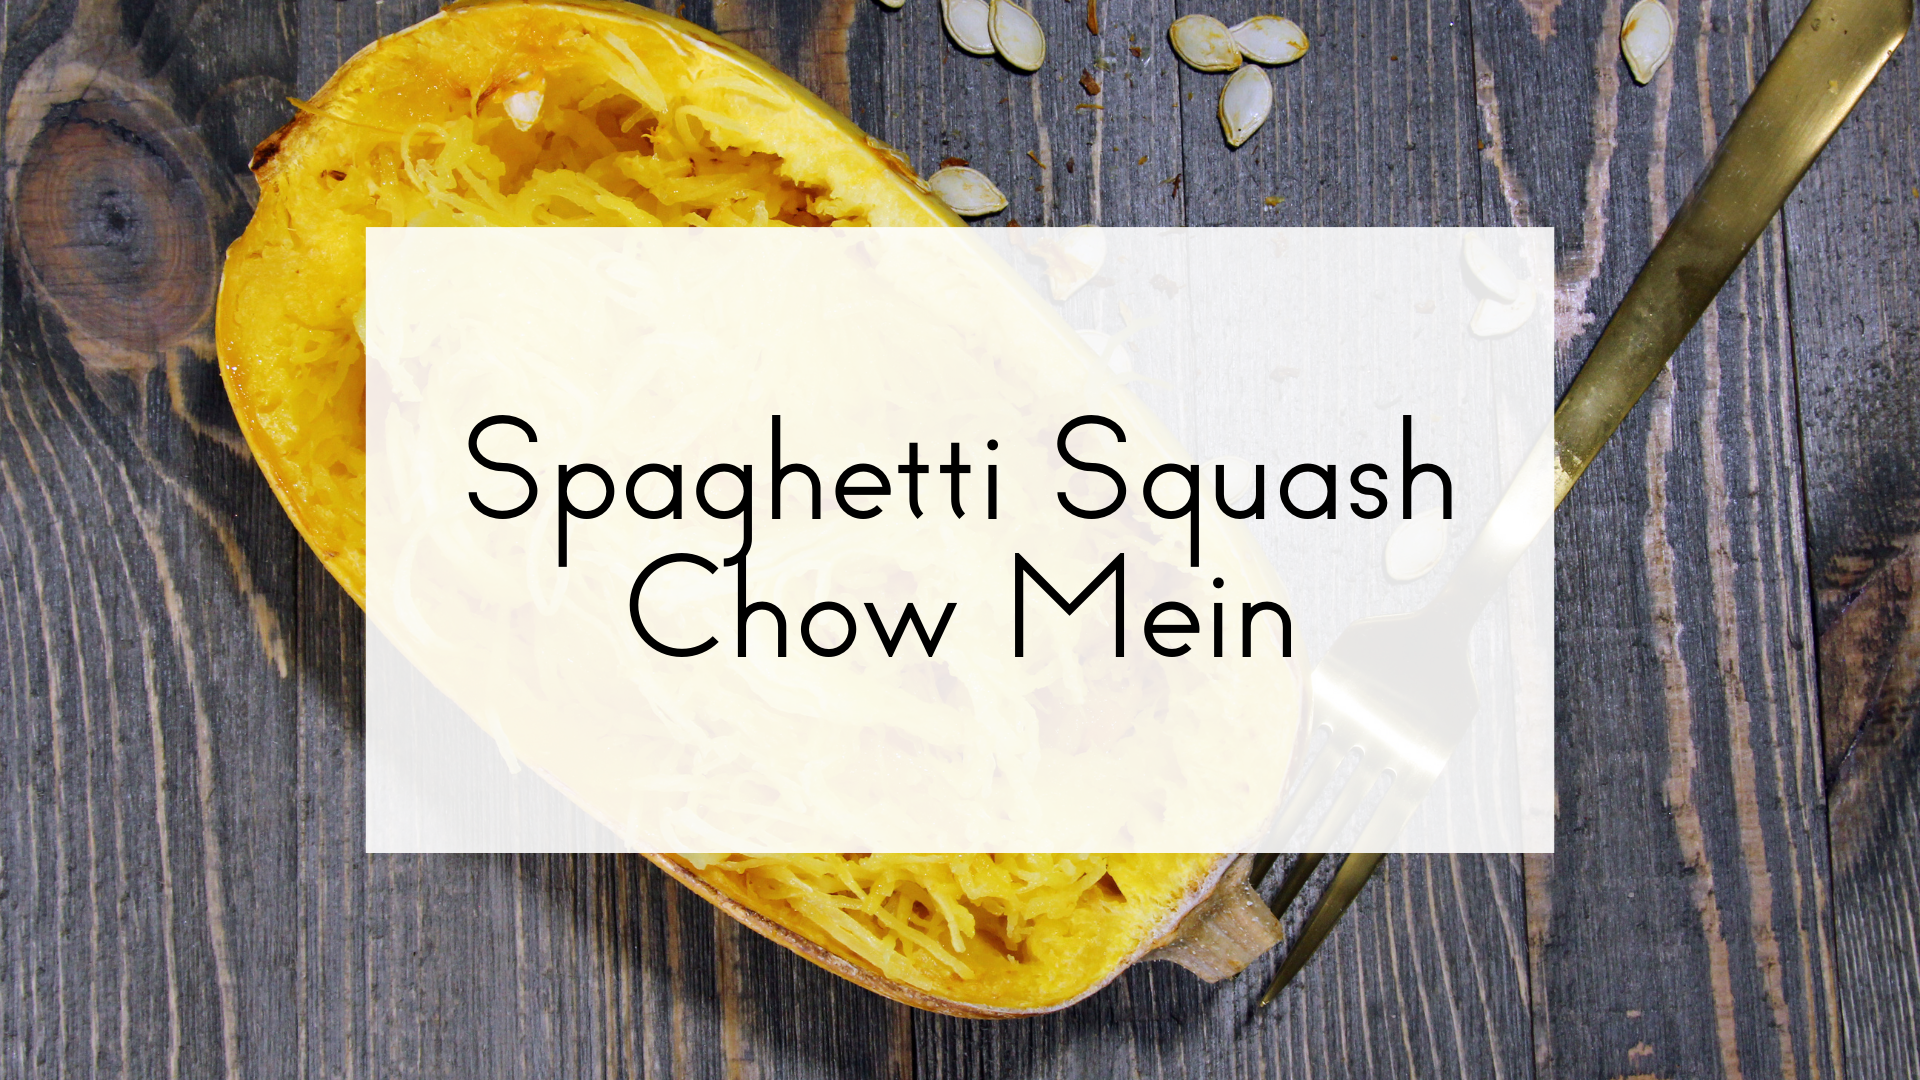 Squash Chow Mein